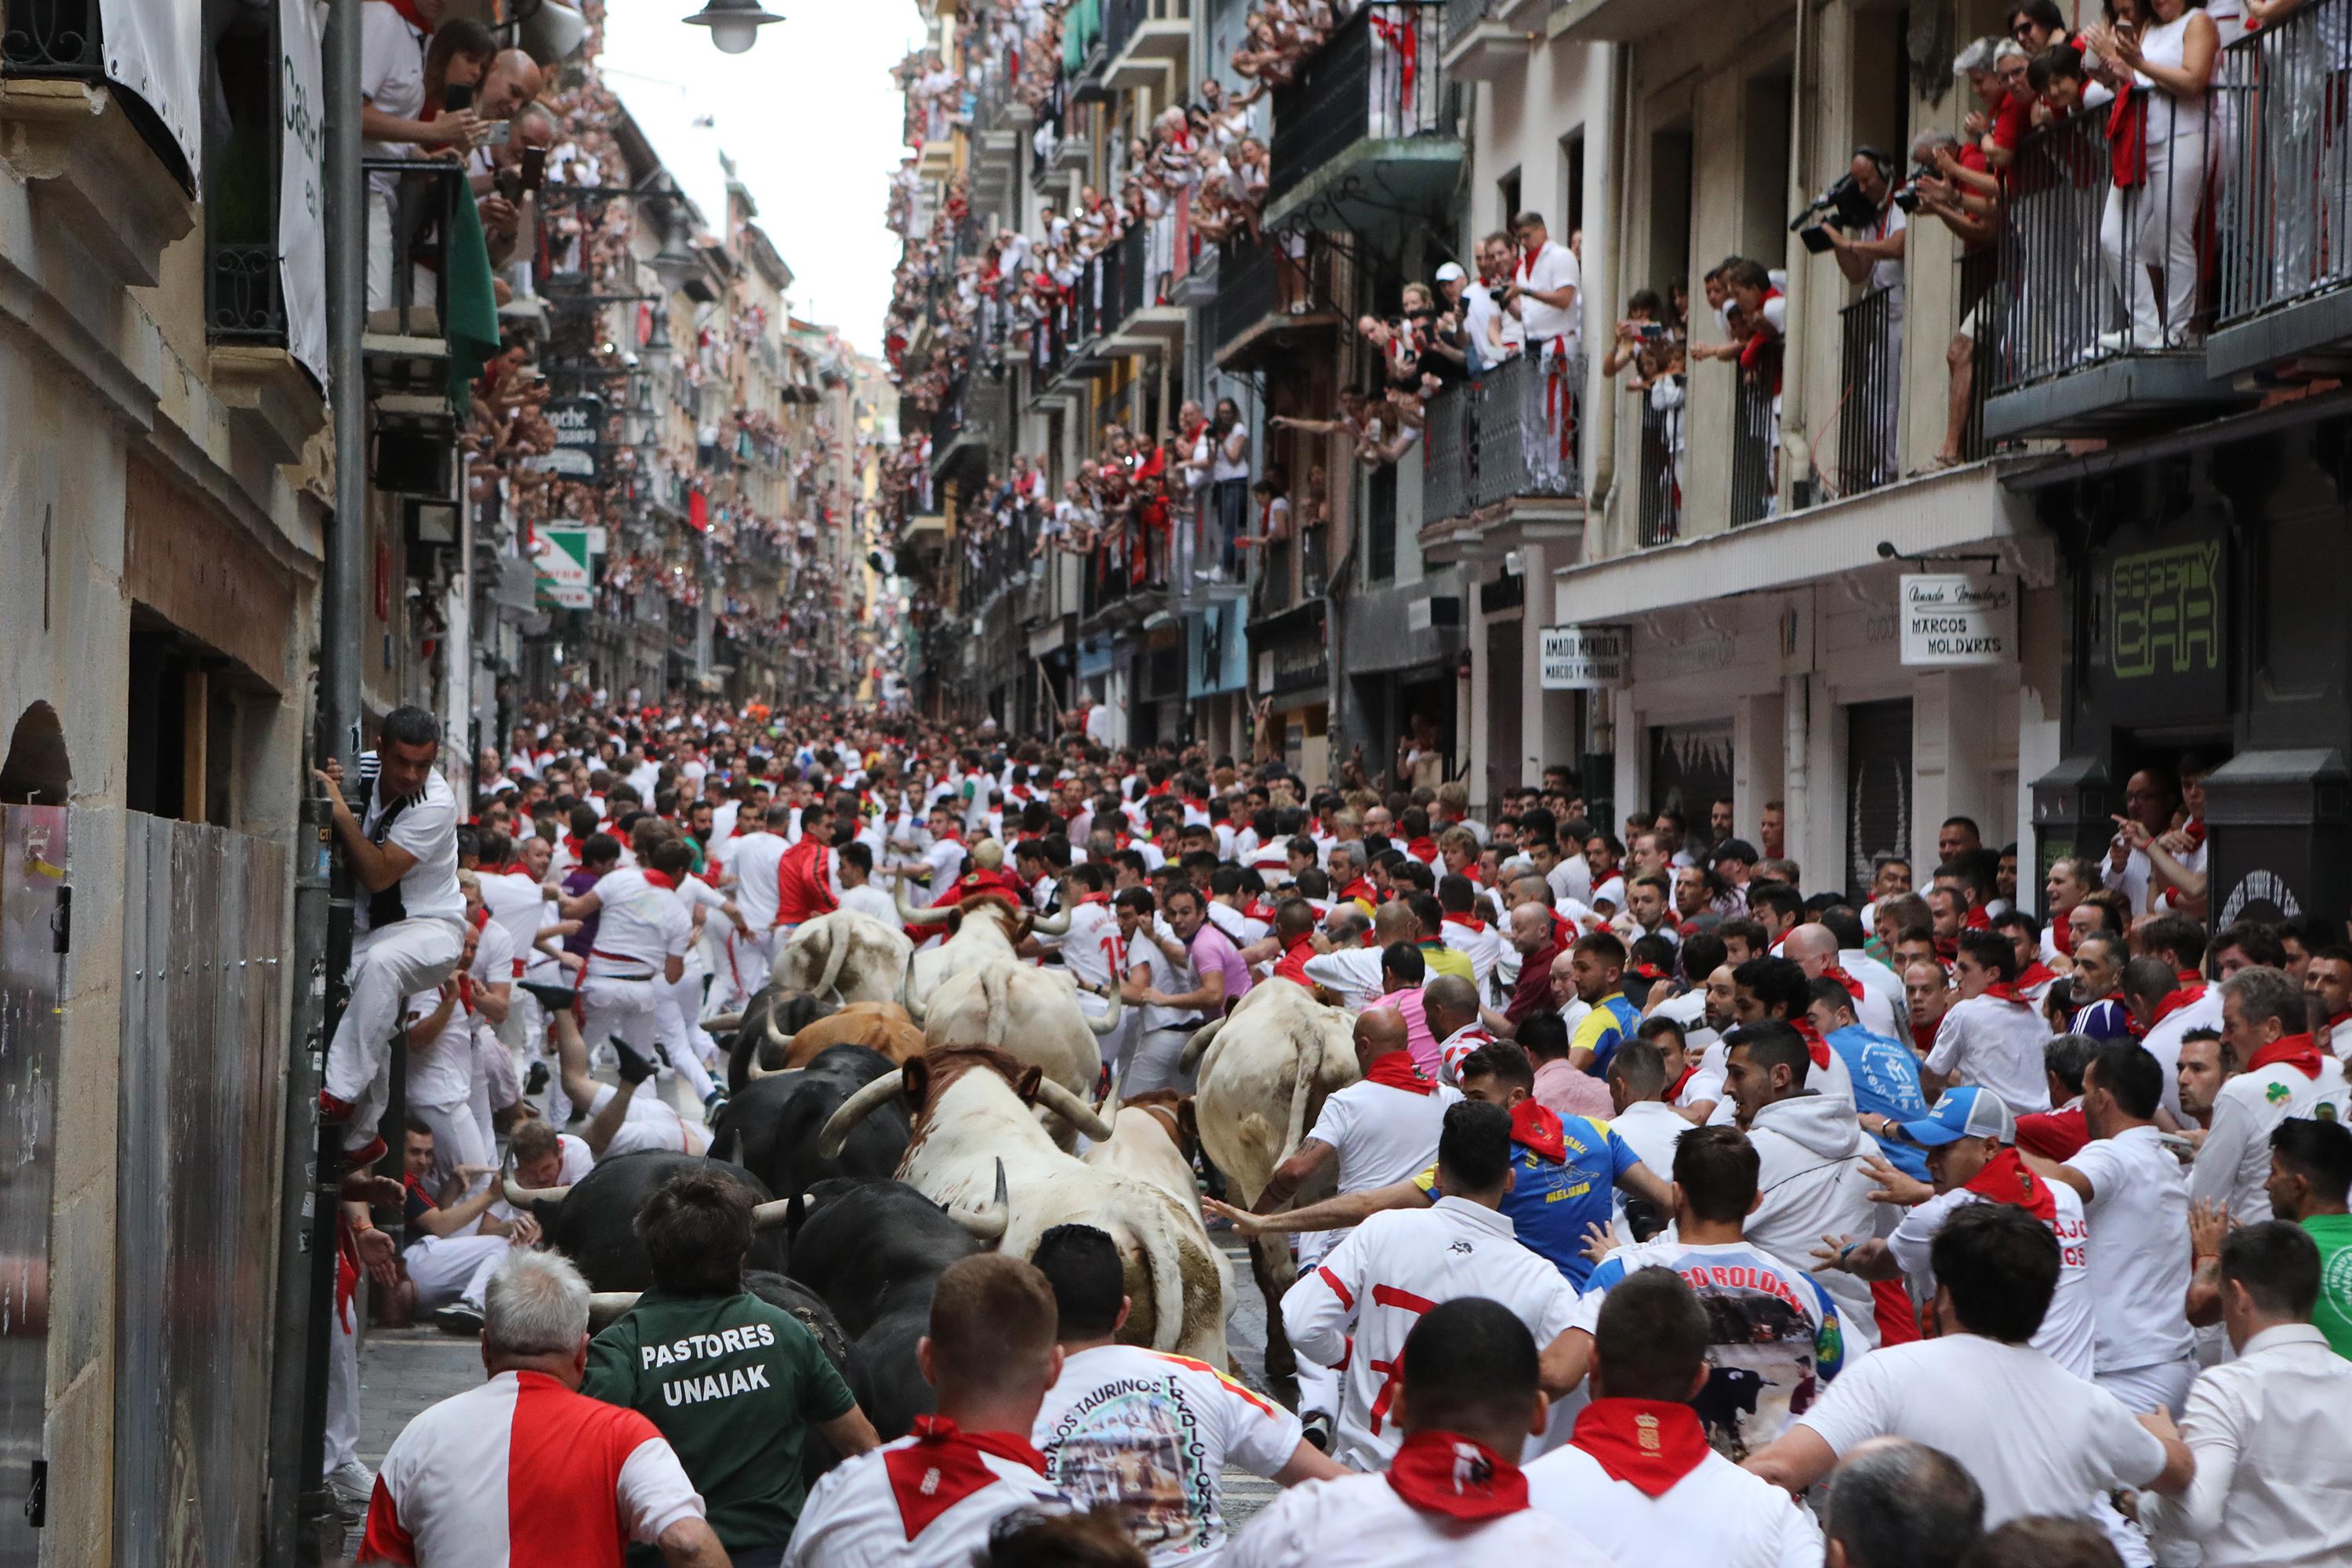  Decenas de personas corren delante de los toros en el primer encierro de las fiestas de San Fermín en Pamplona (Navarra) 